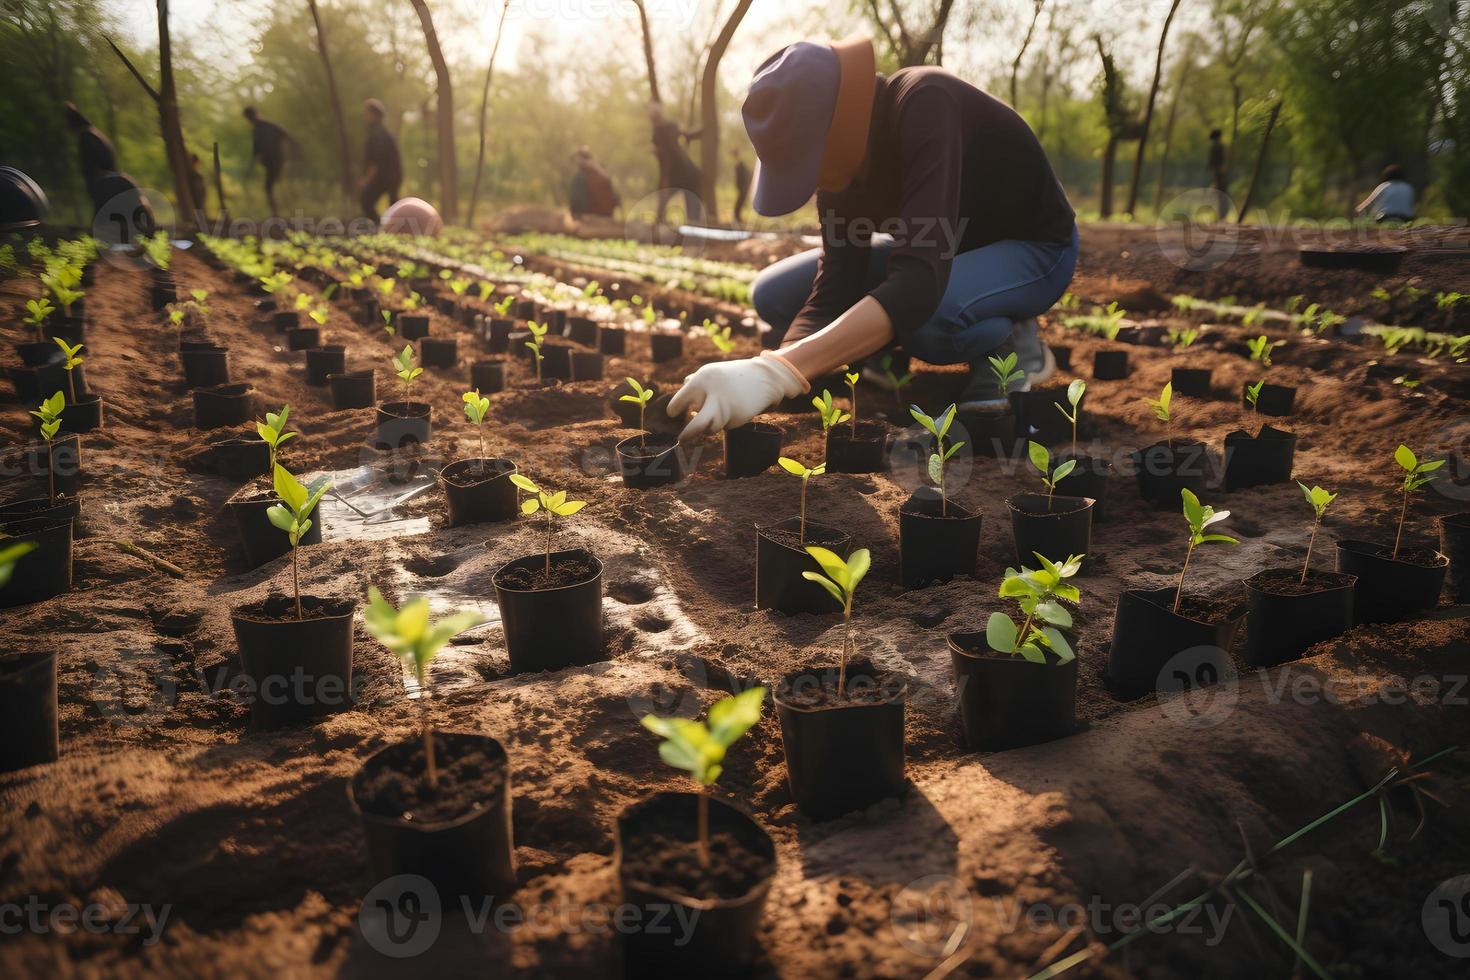 plantando arboles para un sostenible futuro. comunidad jardín y ambiental conservación - promoviendo habitat restauracion y comunidad compromiso en tierra día foto